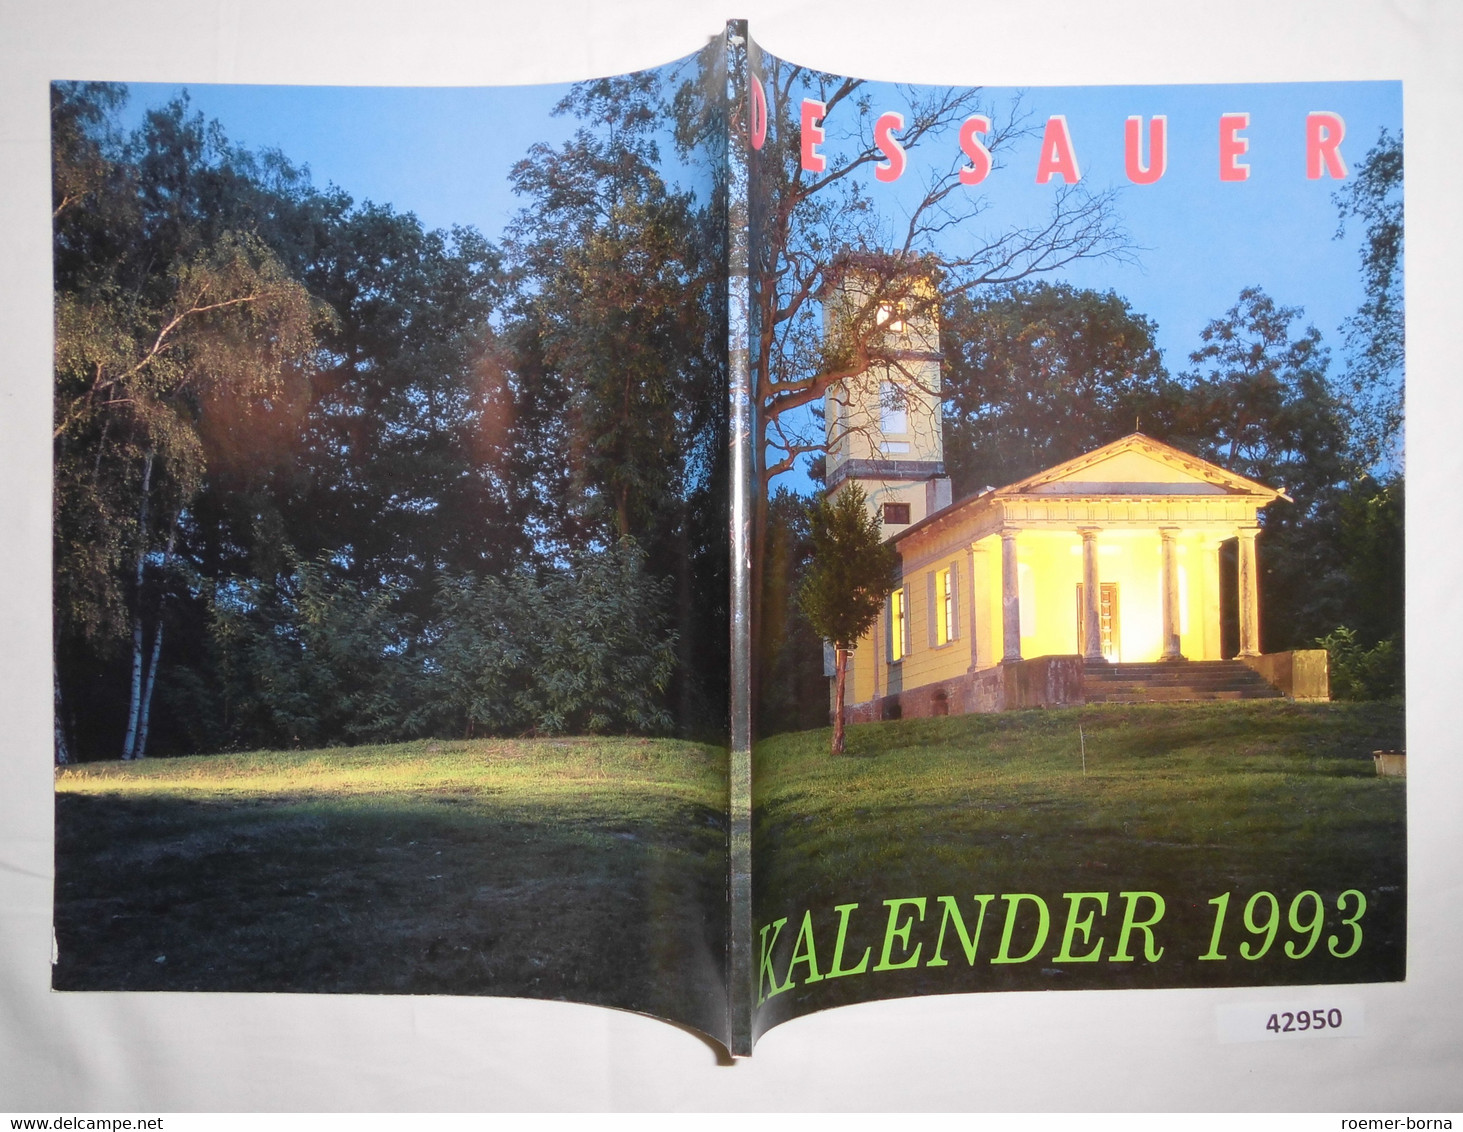 Dessauer Kalender 1993 (37. Jahrgang) - Calendarios